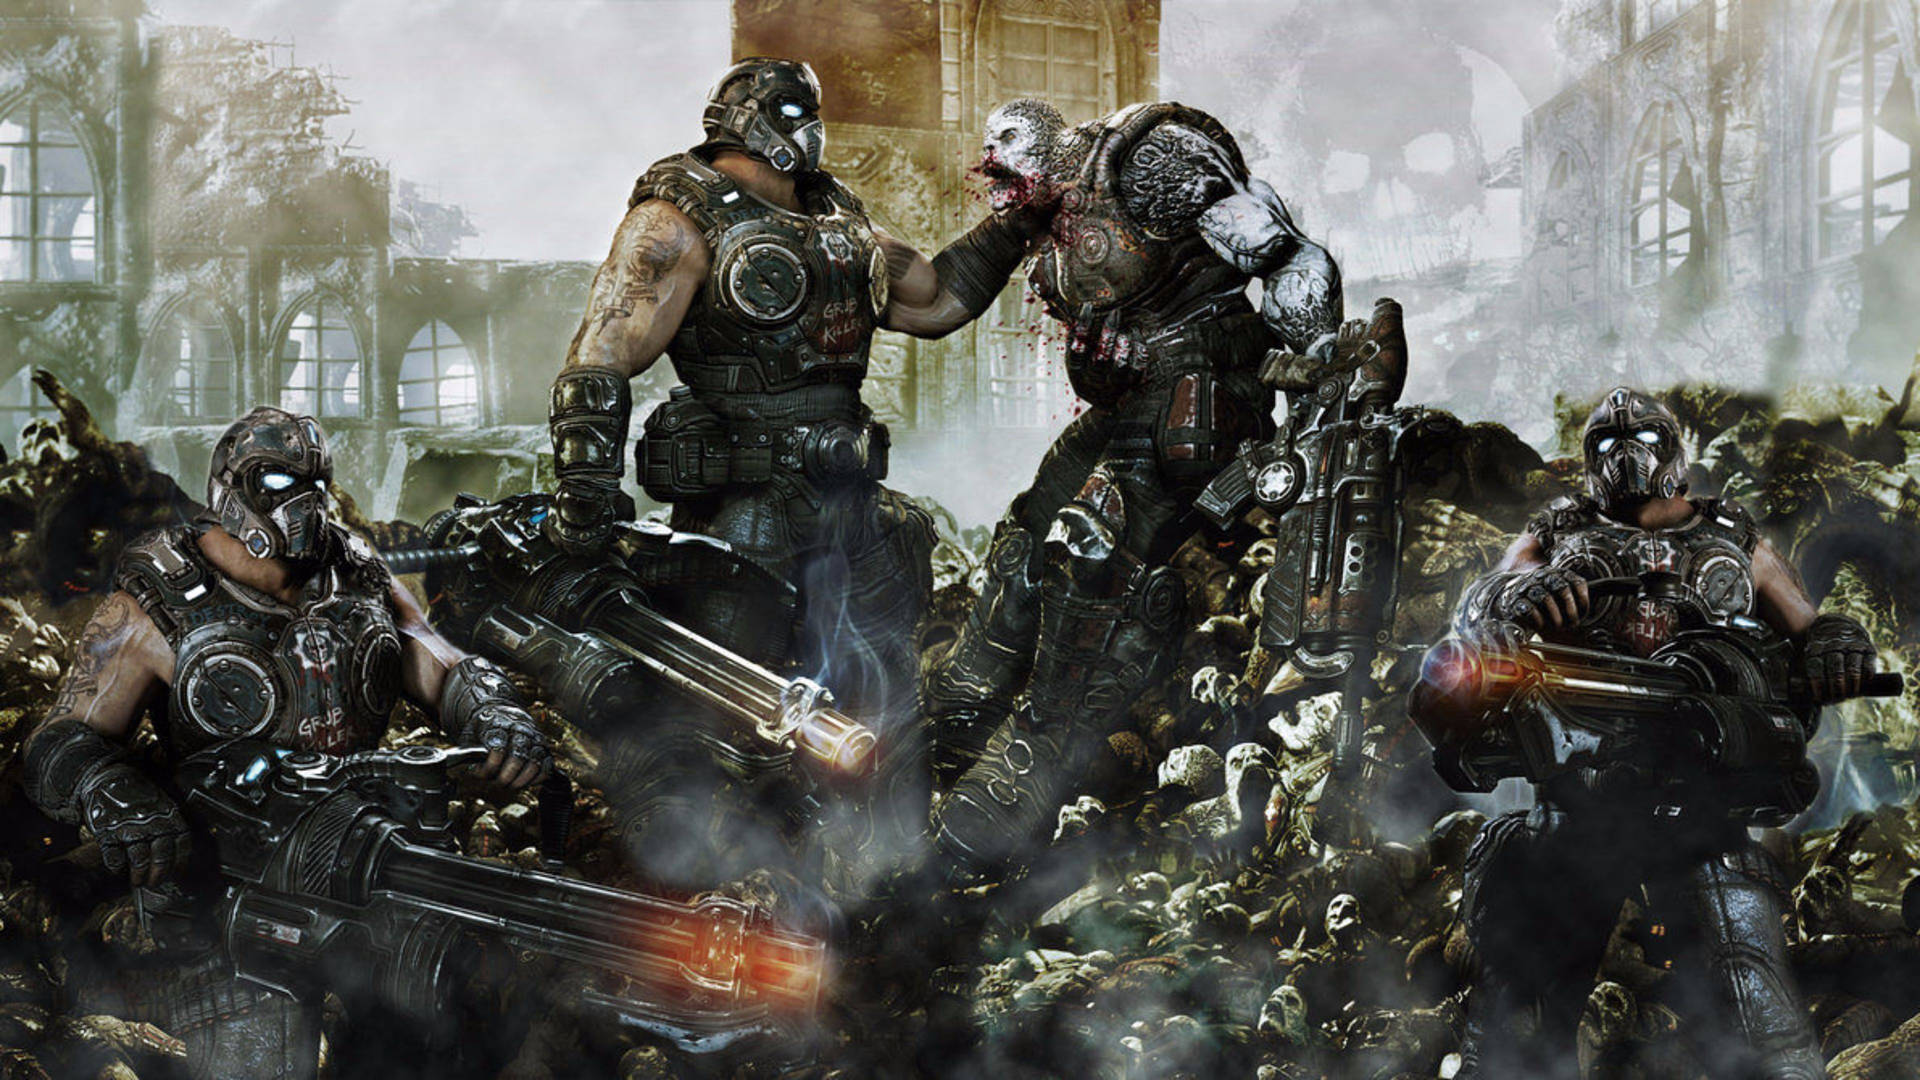 Intense Battle in Gears of War 4 Wallpaper